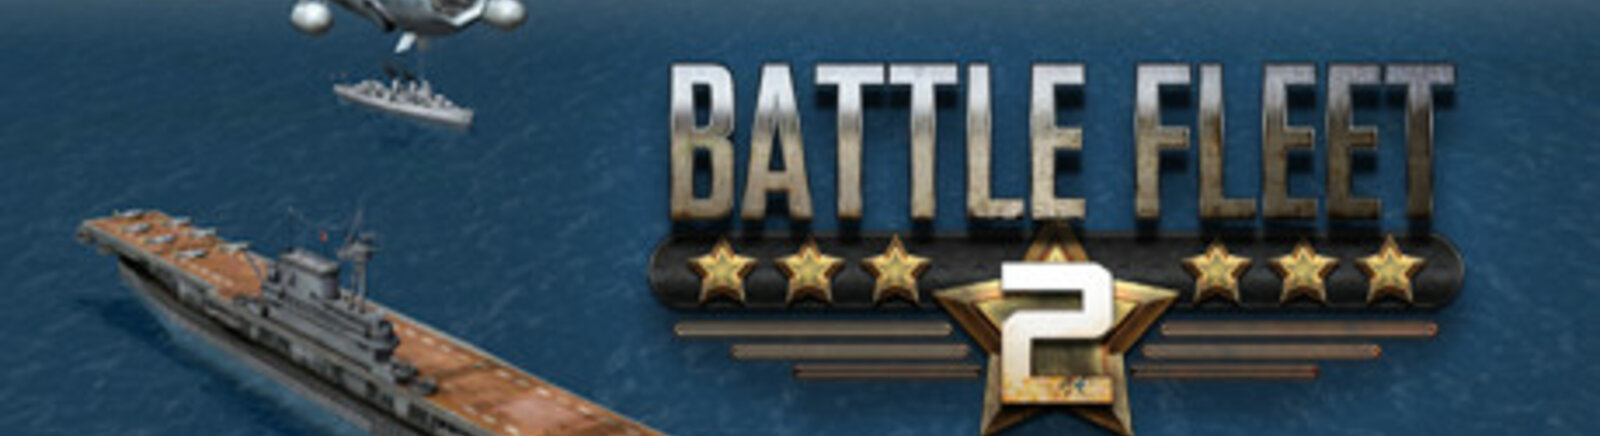 Дата выхода Battle Fleet 2  на PC, iOS и Mac в России и во всем мире